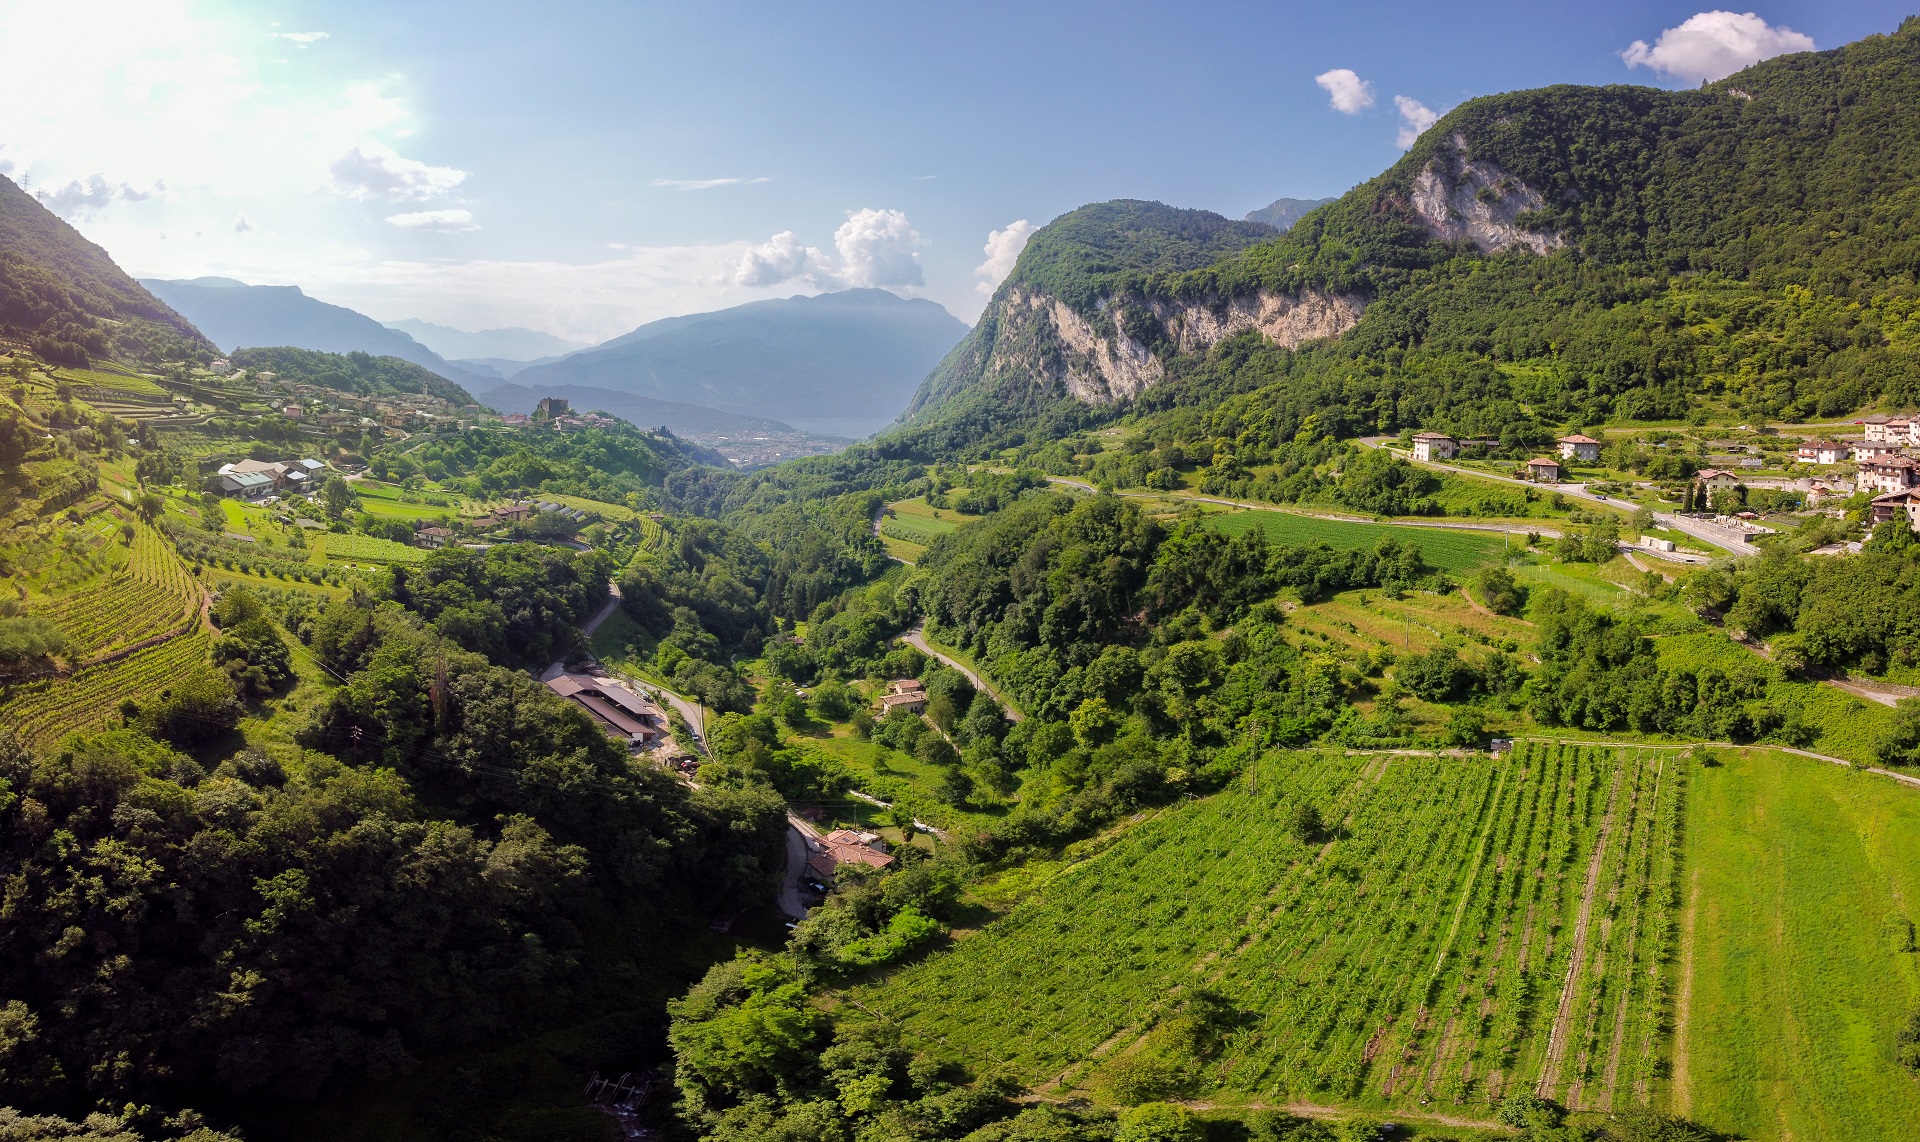 Agraria Riva del Garda